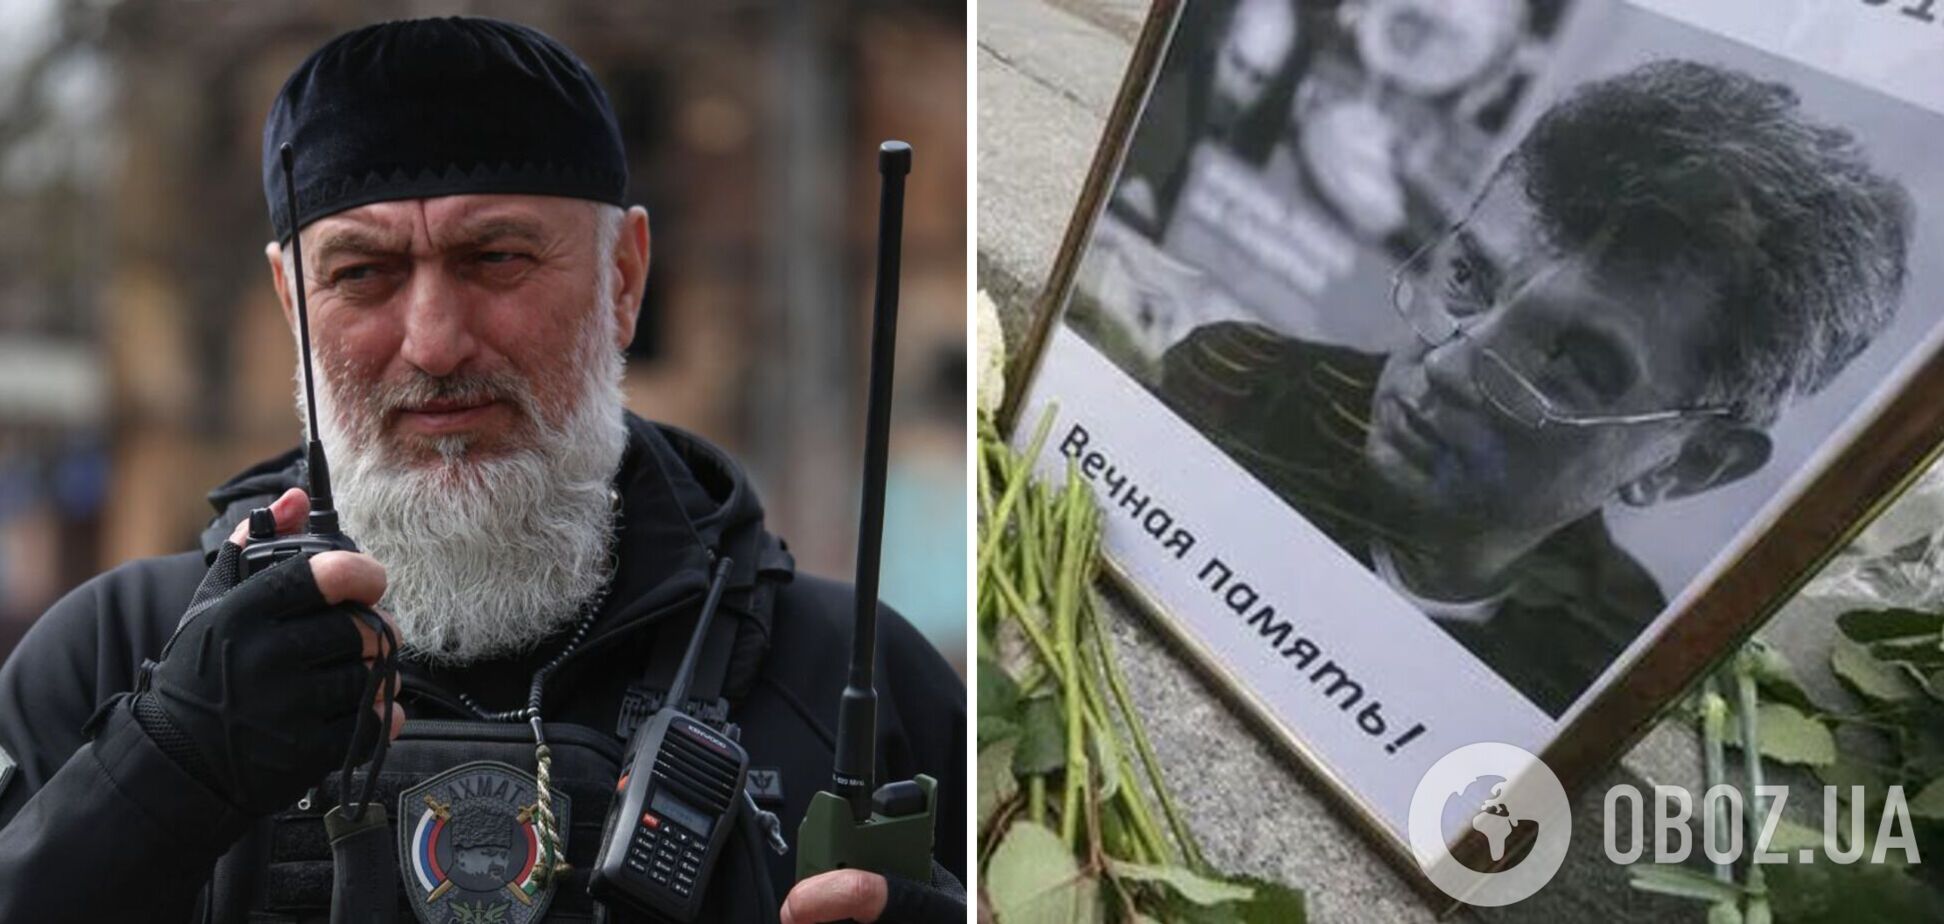 Путін надав звання героя Росії Адаму Делімханову, якого називають організатором вбивства Нємцова